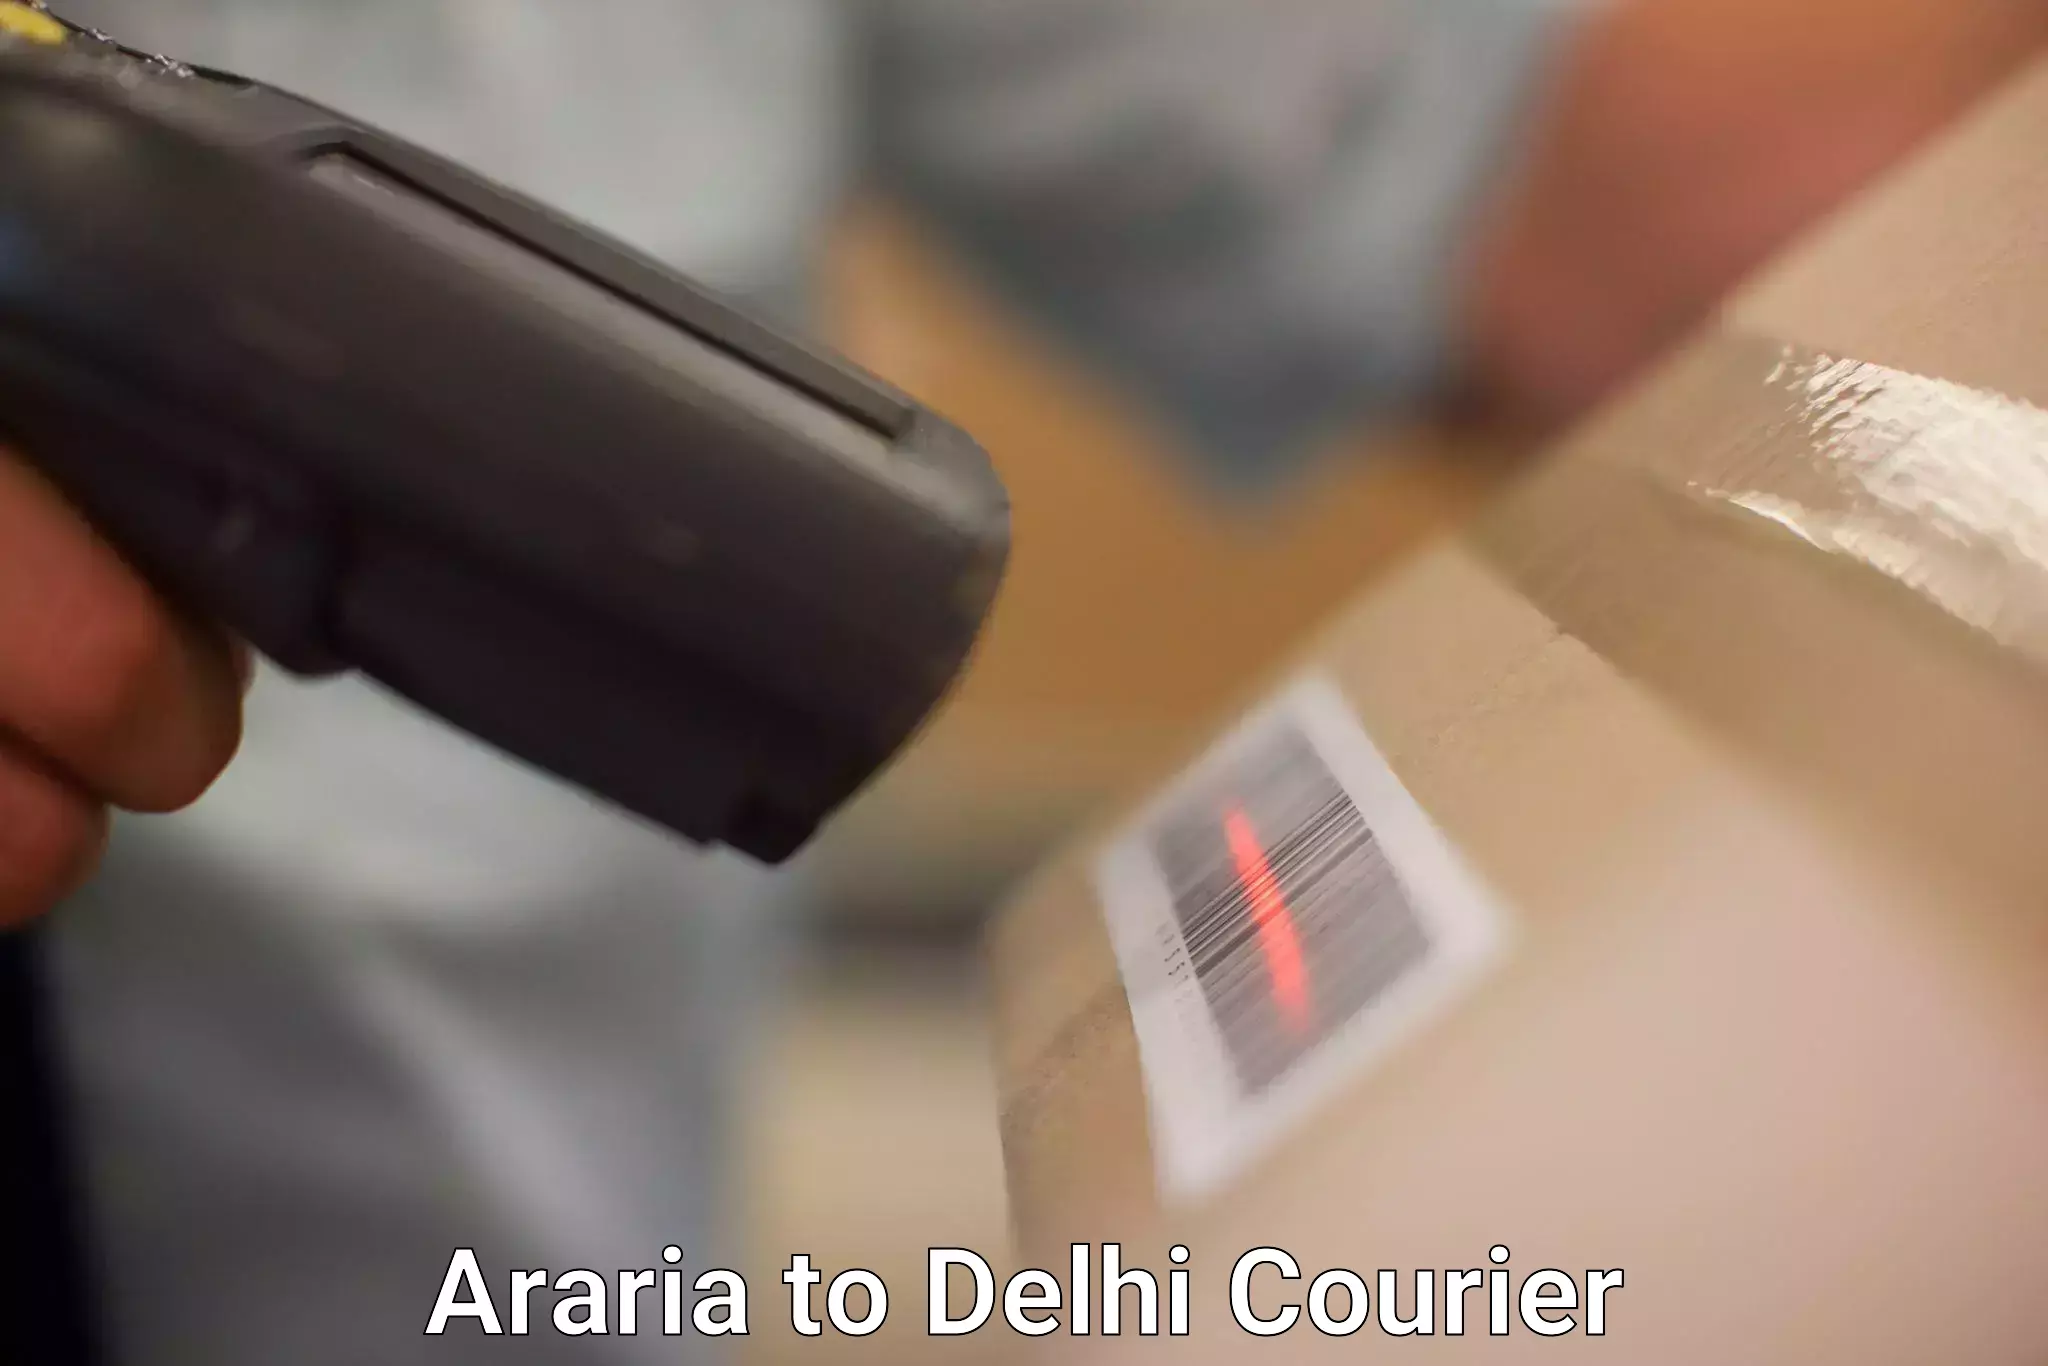 Door-to-door freight service Araria to University of Delhi